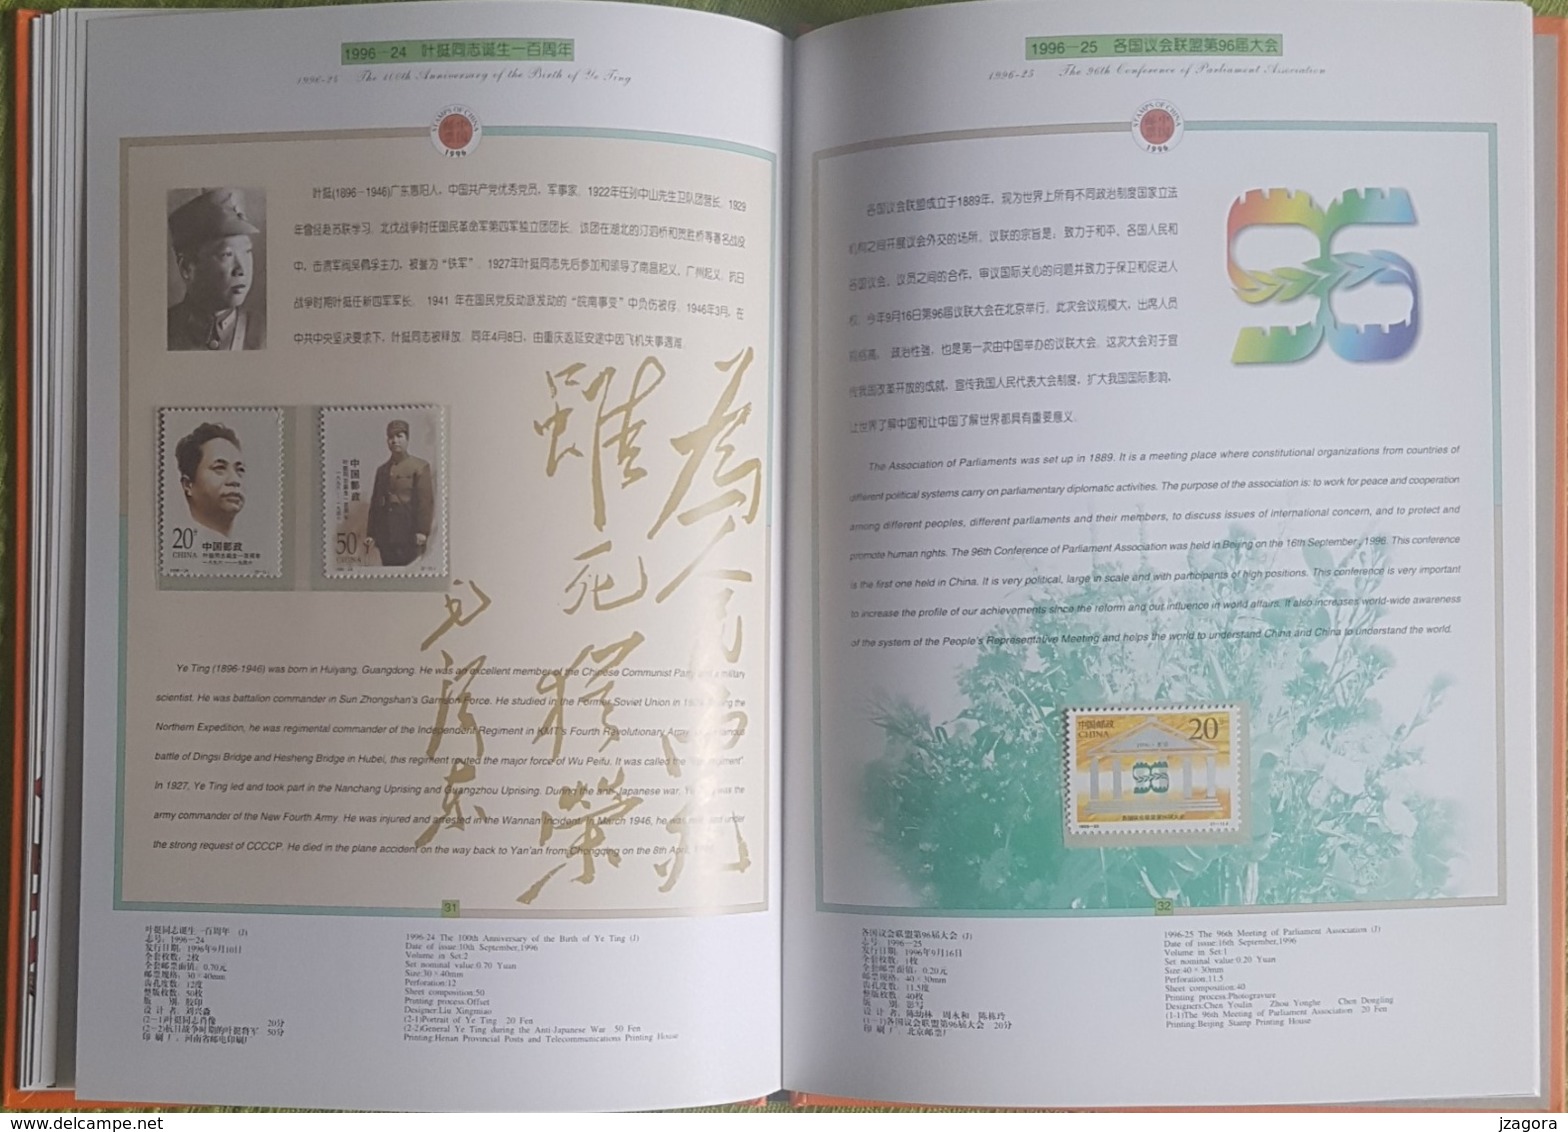 CHINA CHINE 1996 STAMP YEAR BOOK 50 PAGES - LIBRO DEL AÑO DEL SELLO BRIEFMARKENJAHRBUCH 50 SEITEN ANNÉE LIVRE